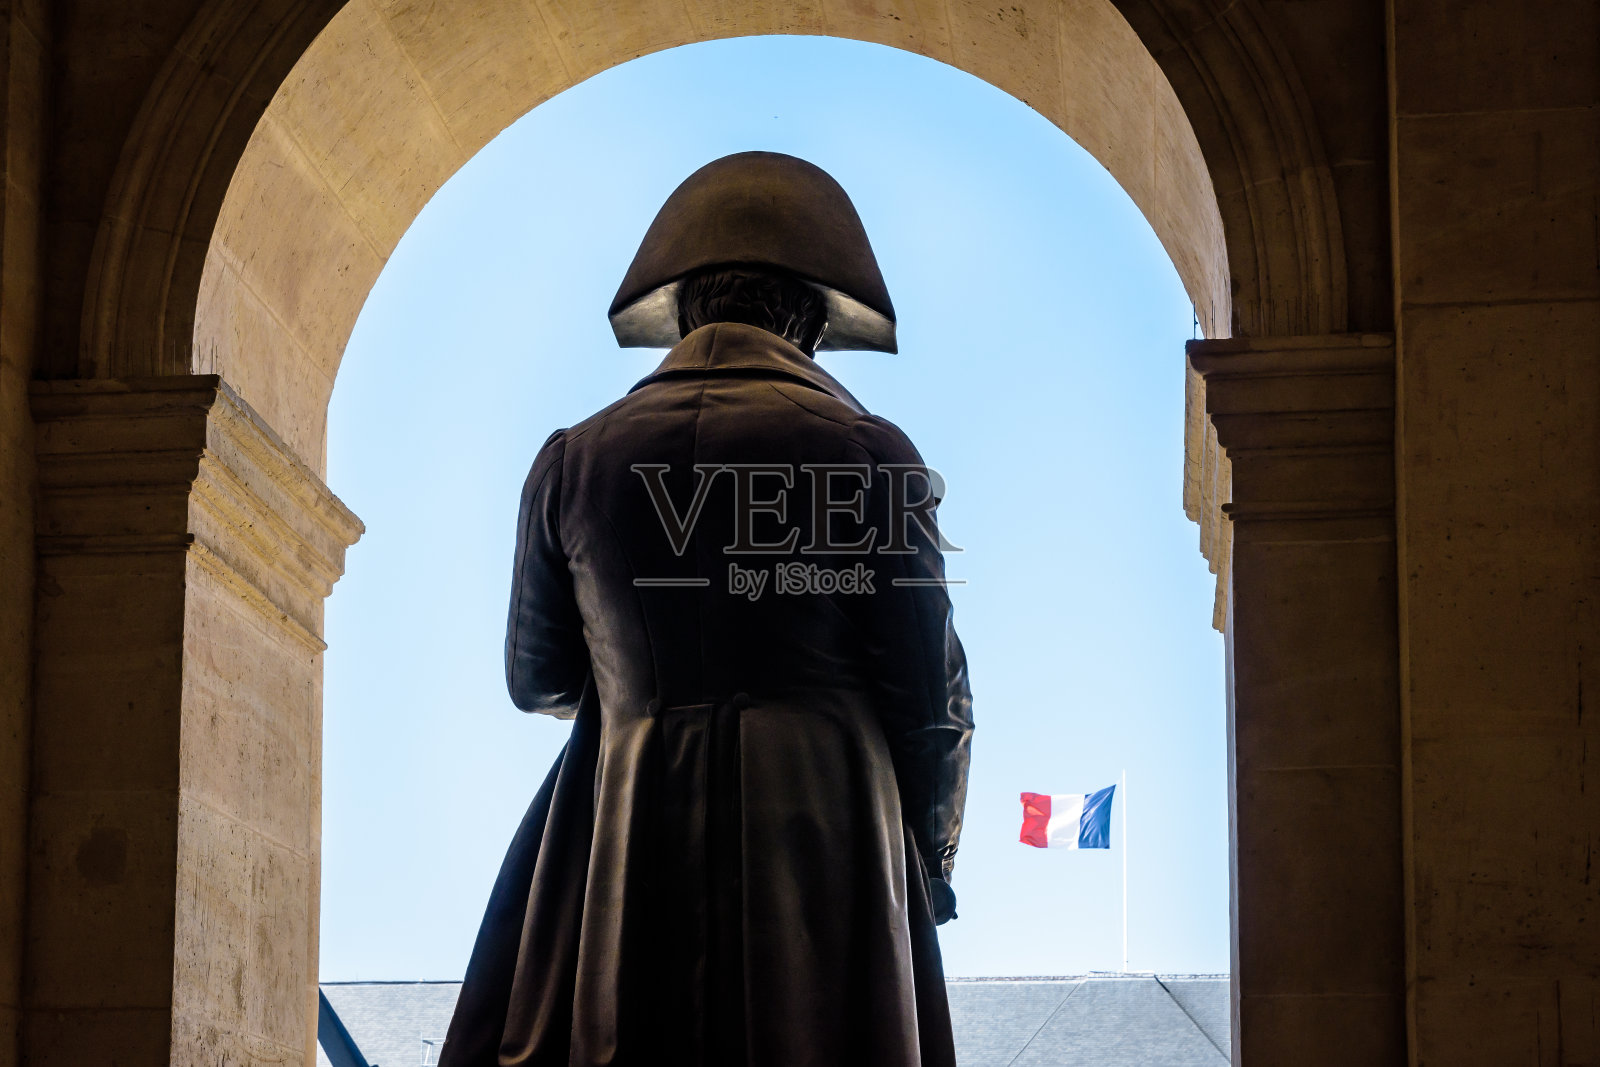 巴黎荣军院拿破仑·波拿巴的雕像。照片摄影图片